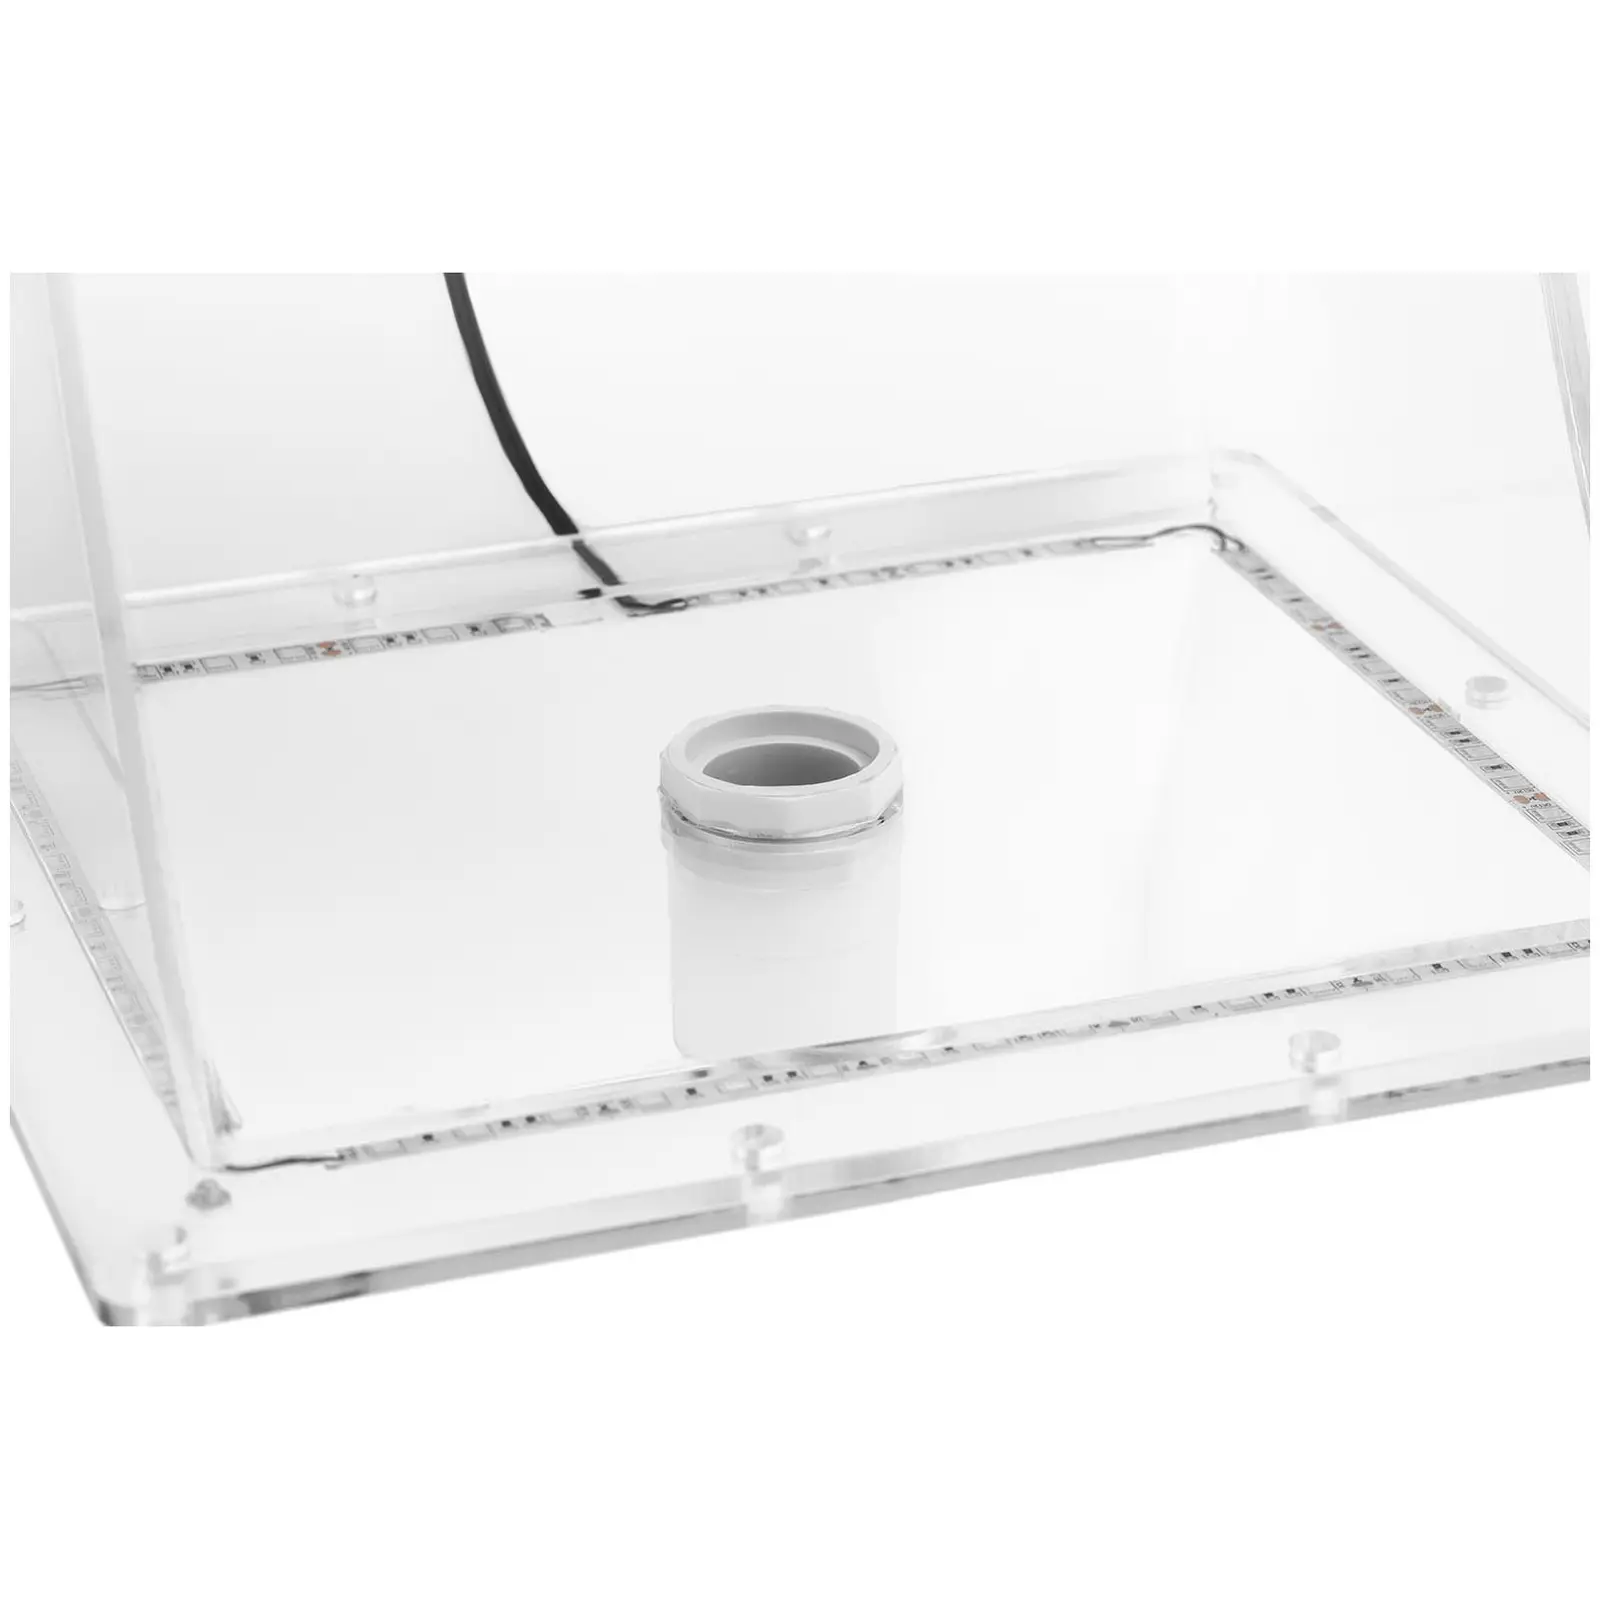 Overspenningsdusj - 35 cm - LED-belysning - Blå/hvit